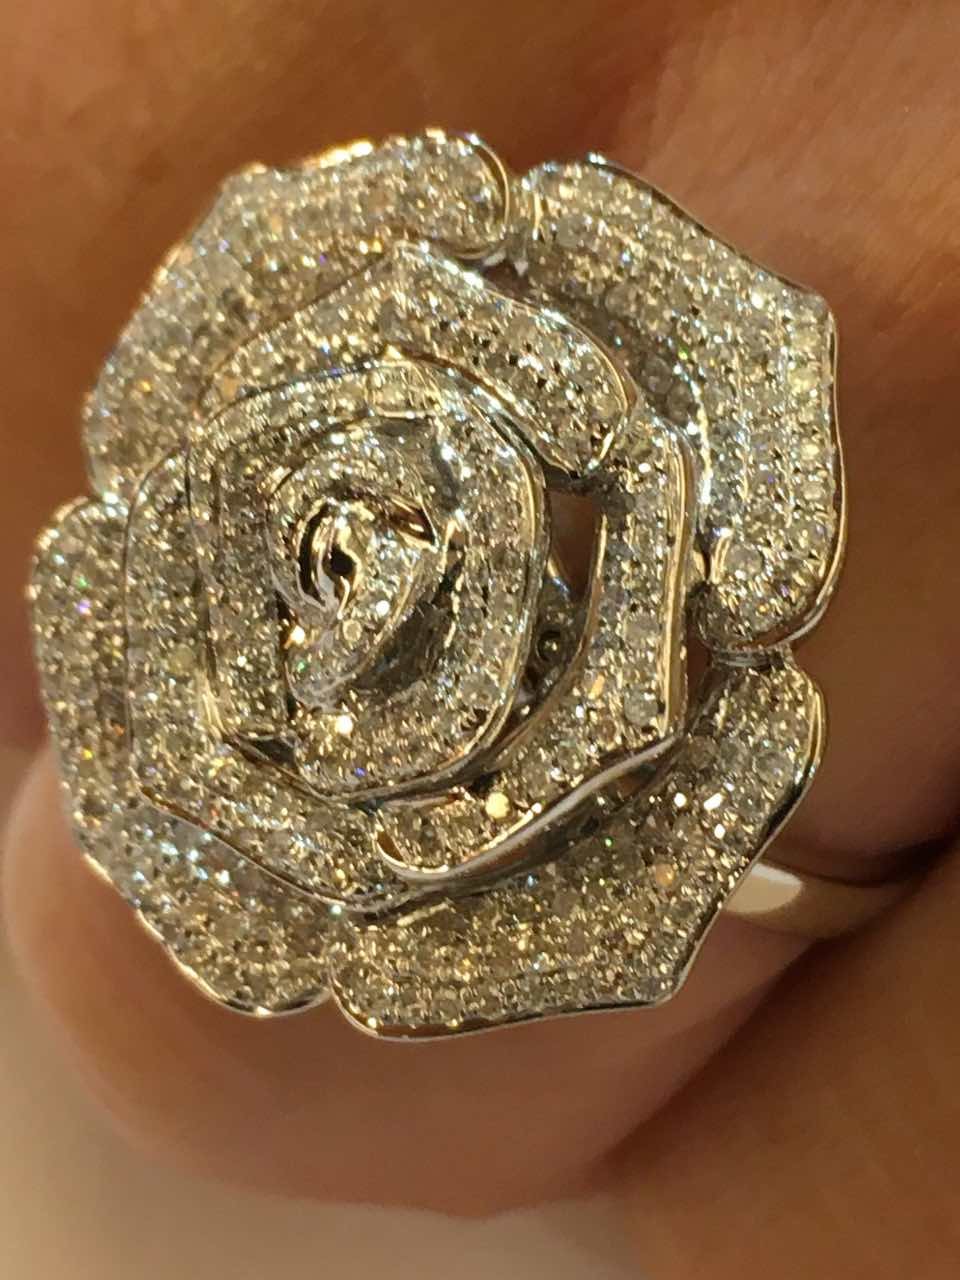 PRAIANO, anillo de oro con diamantes y rosa.